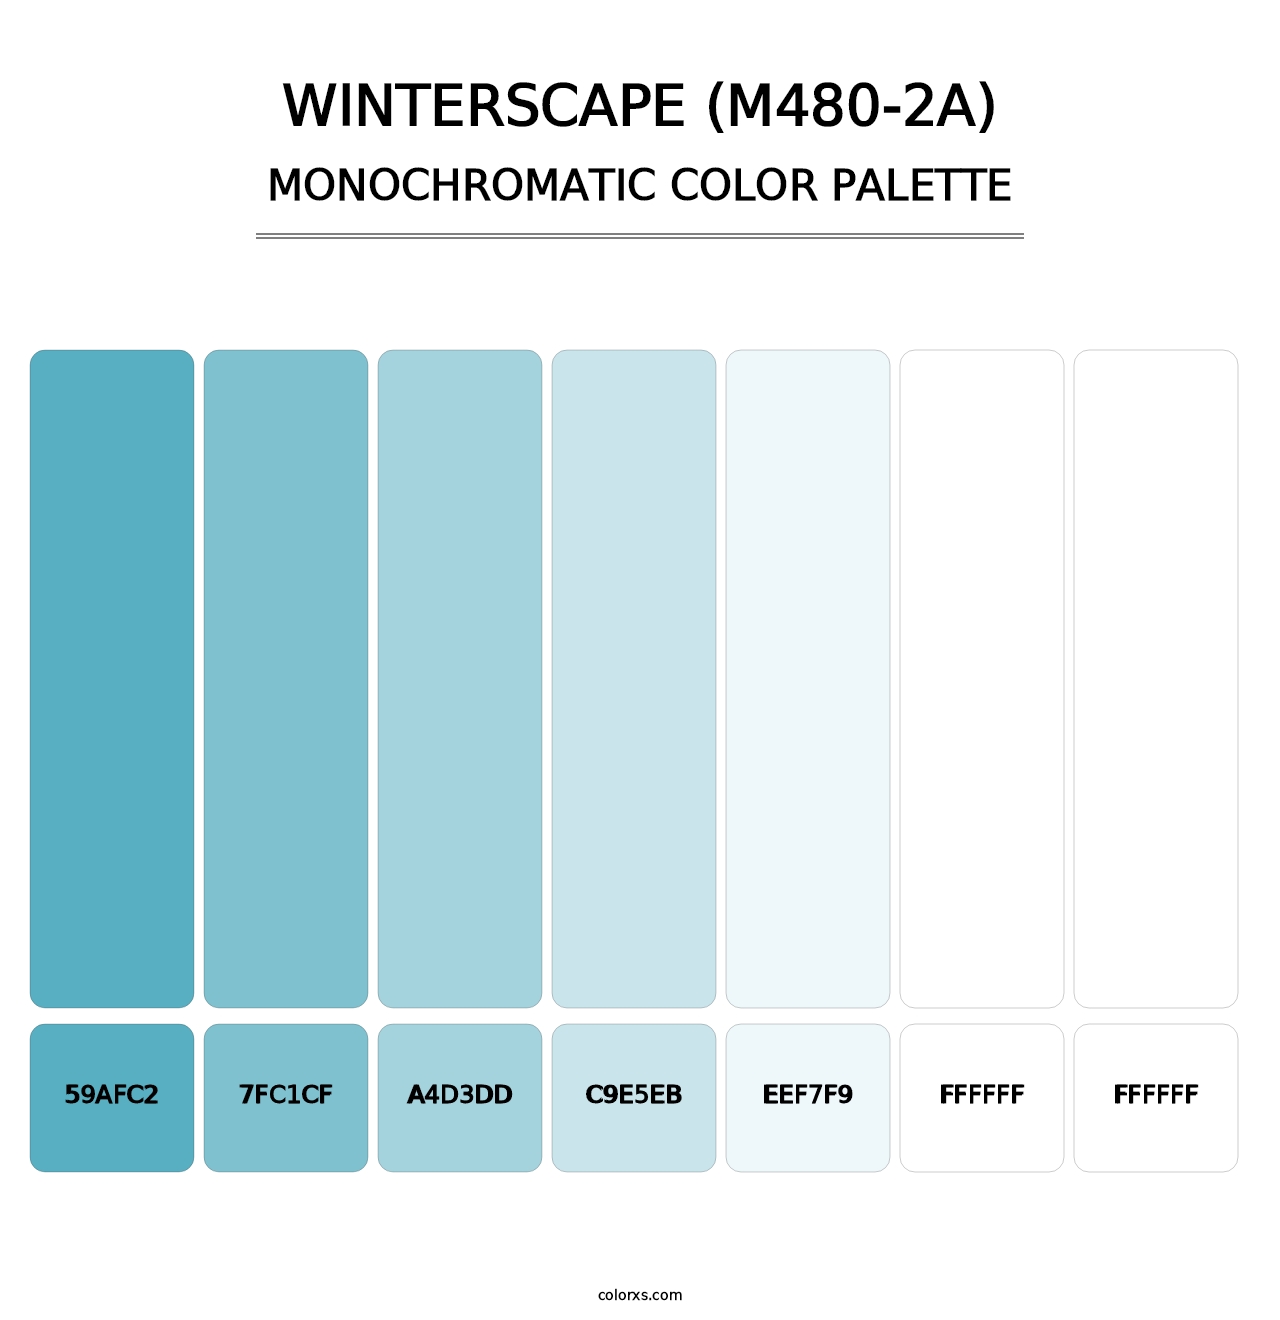 Winterscape (M480-2A) - Monochromatic Color Palette